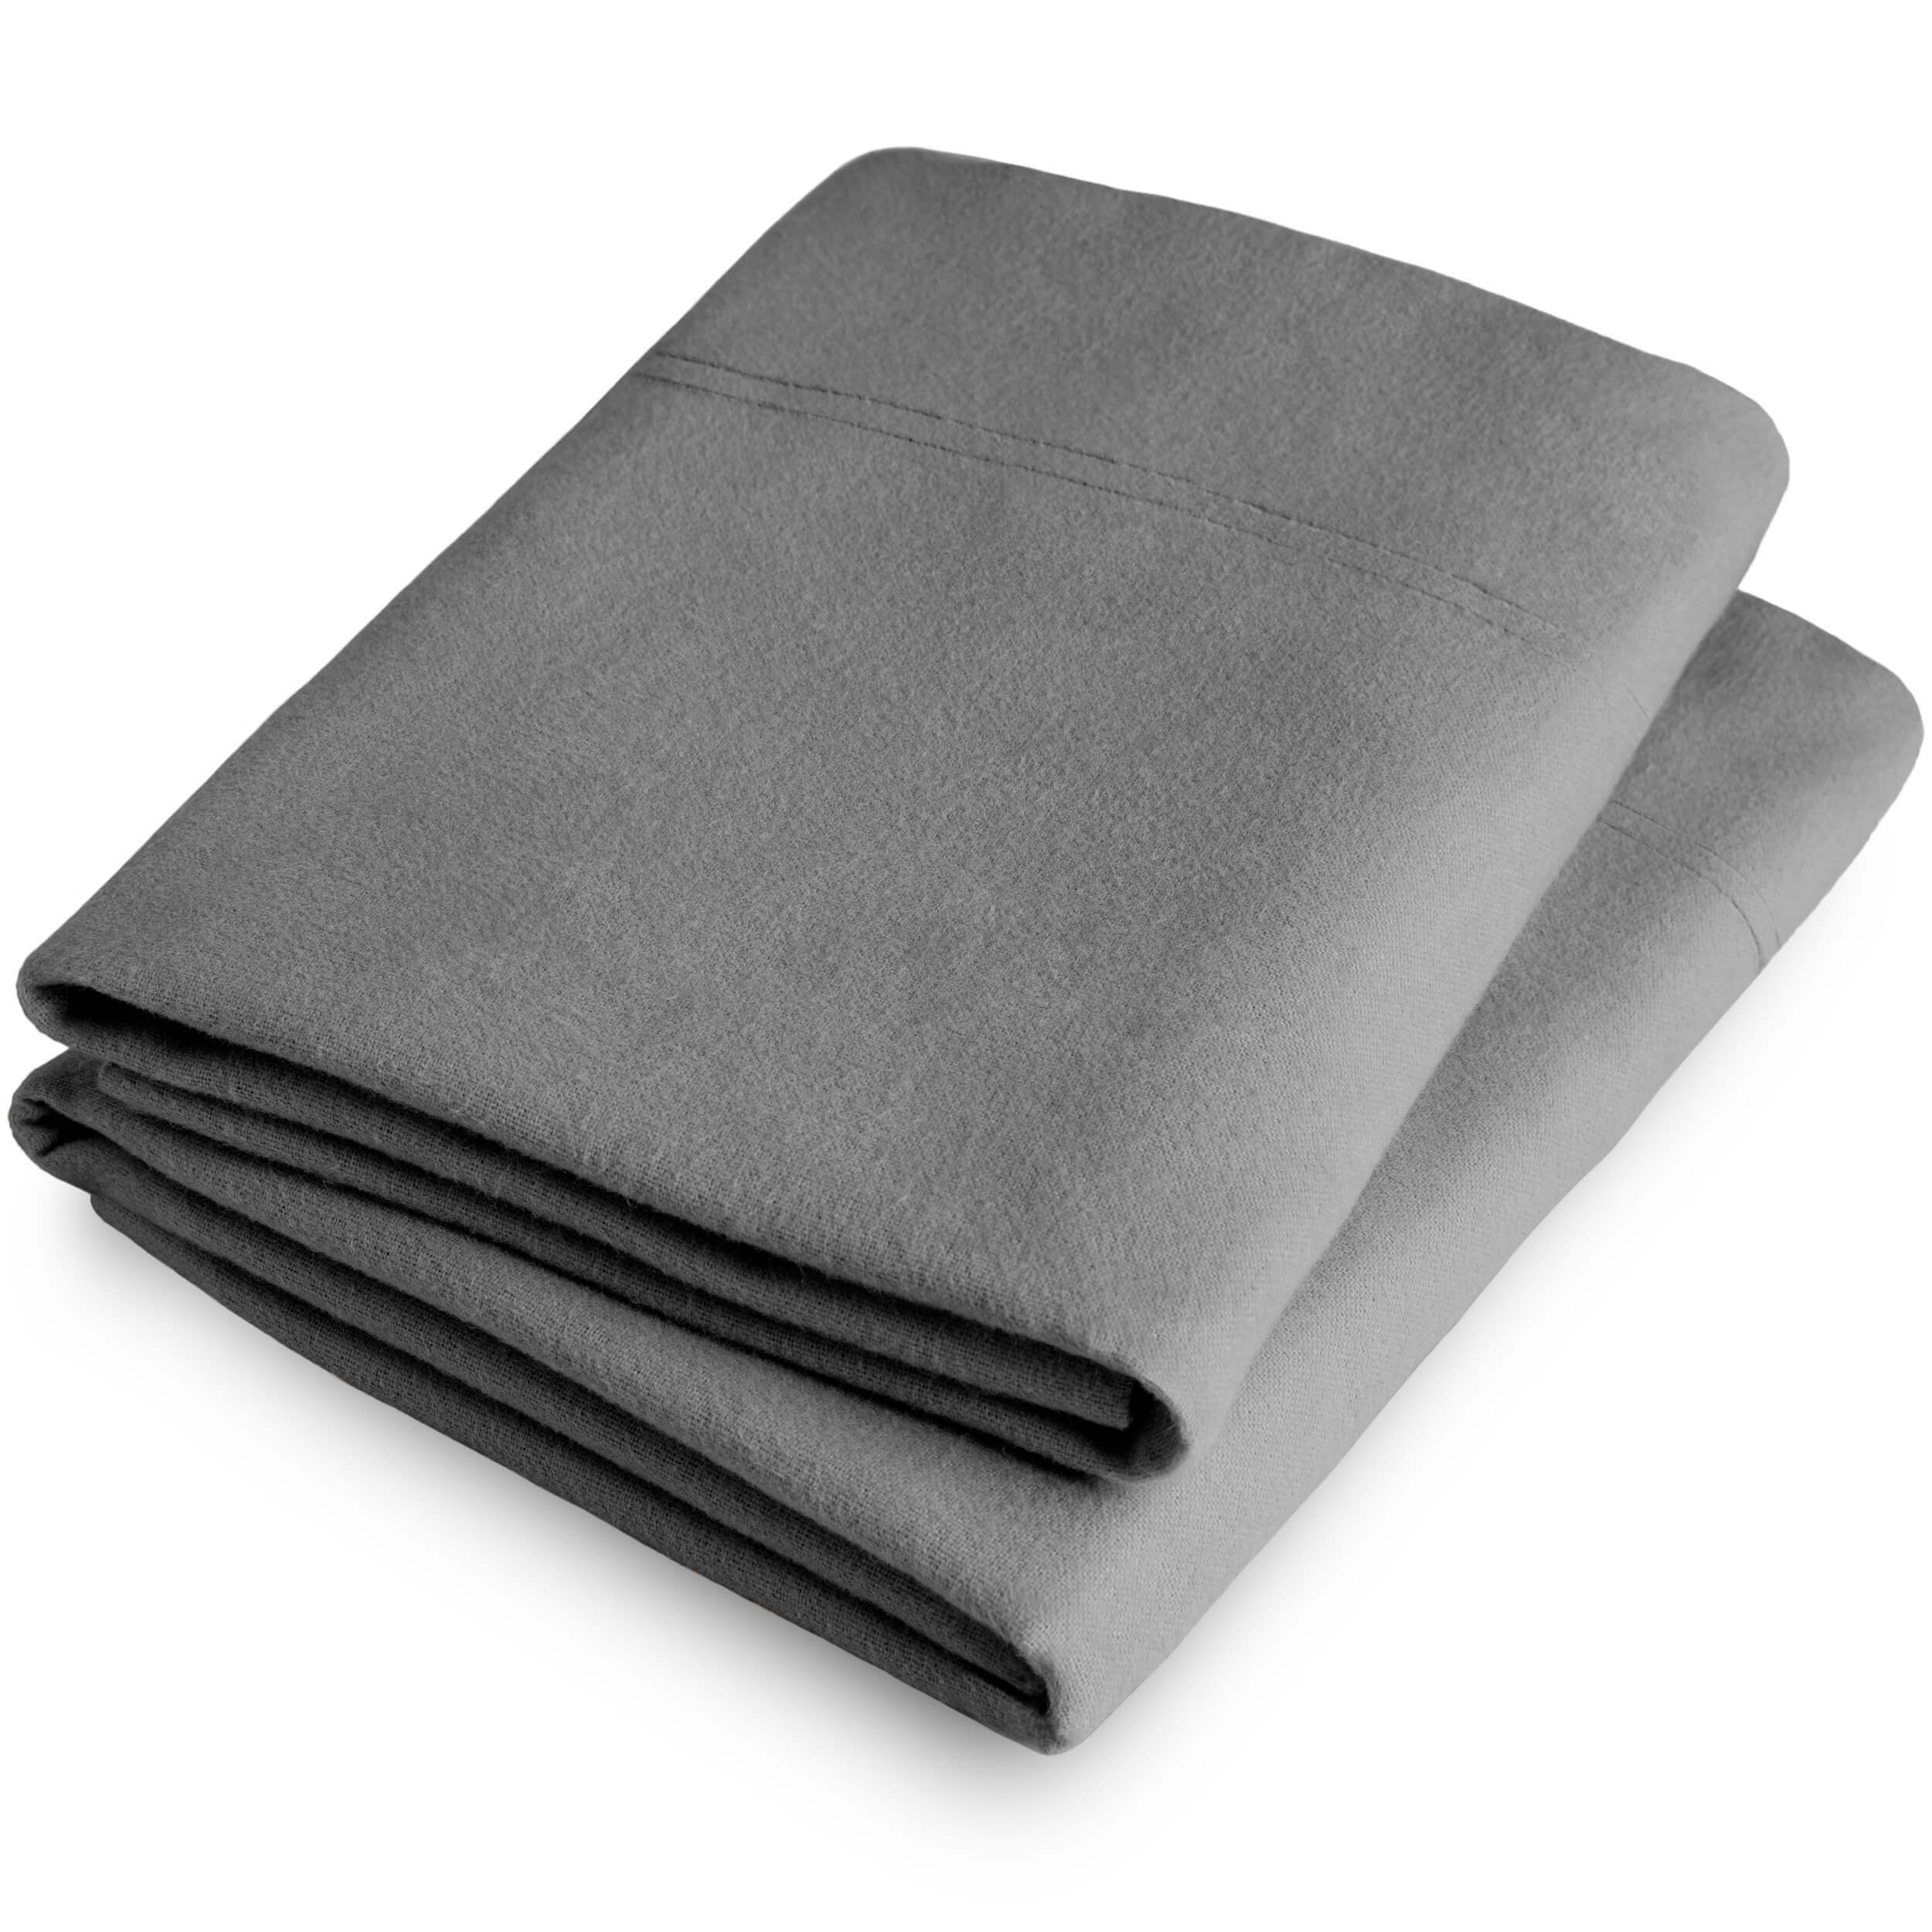 Bare Home King Flannel Pillowcase Set - 100% Cotton - Velvety Soft ...